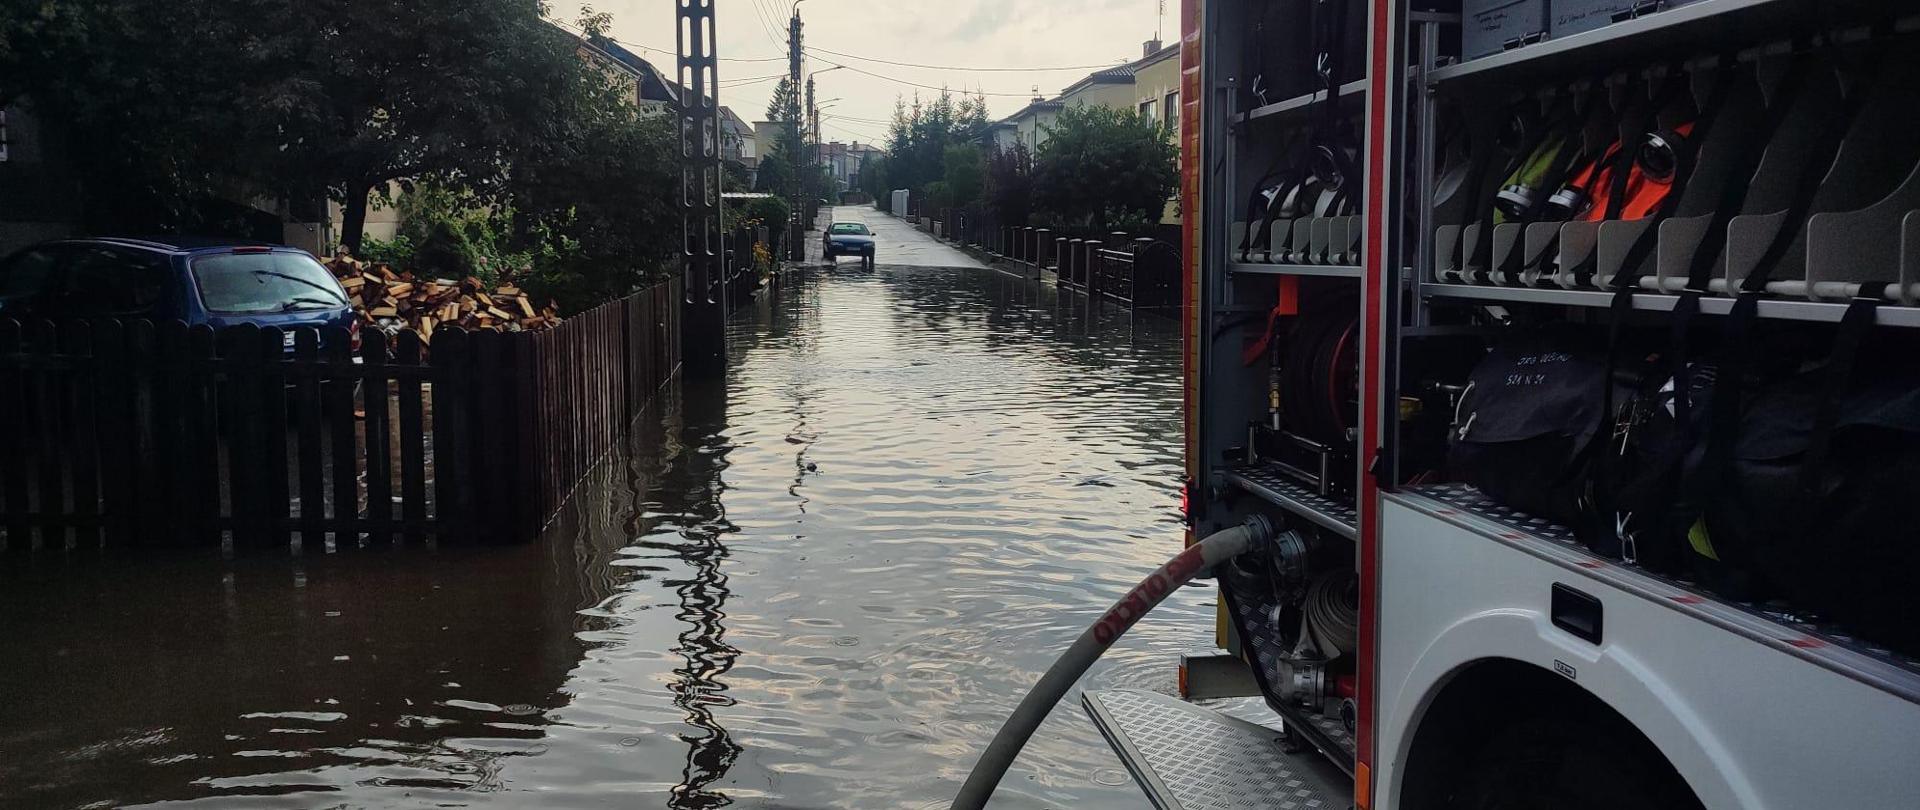 Na zdjęciu widać zalaną ulicę Mickiewicza oraz samochód ratowniczo - gaśniczy wypompowujący wodę.